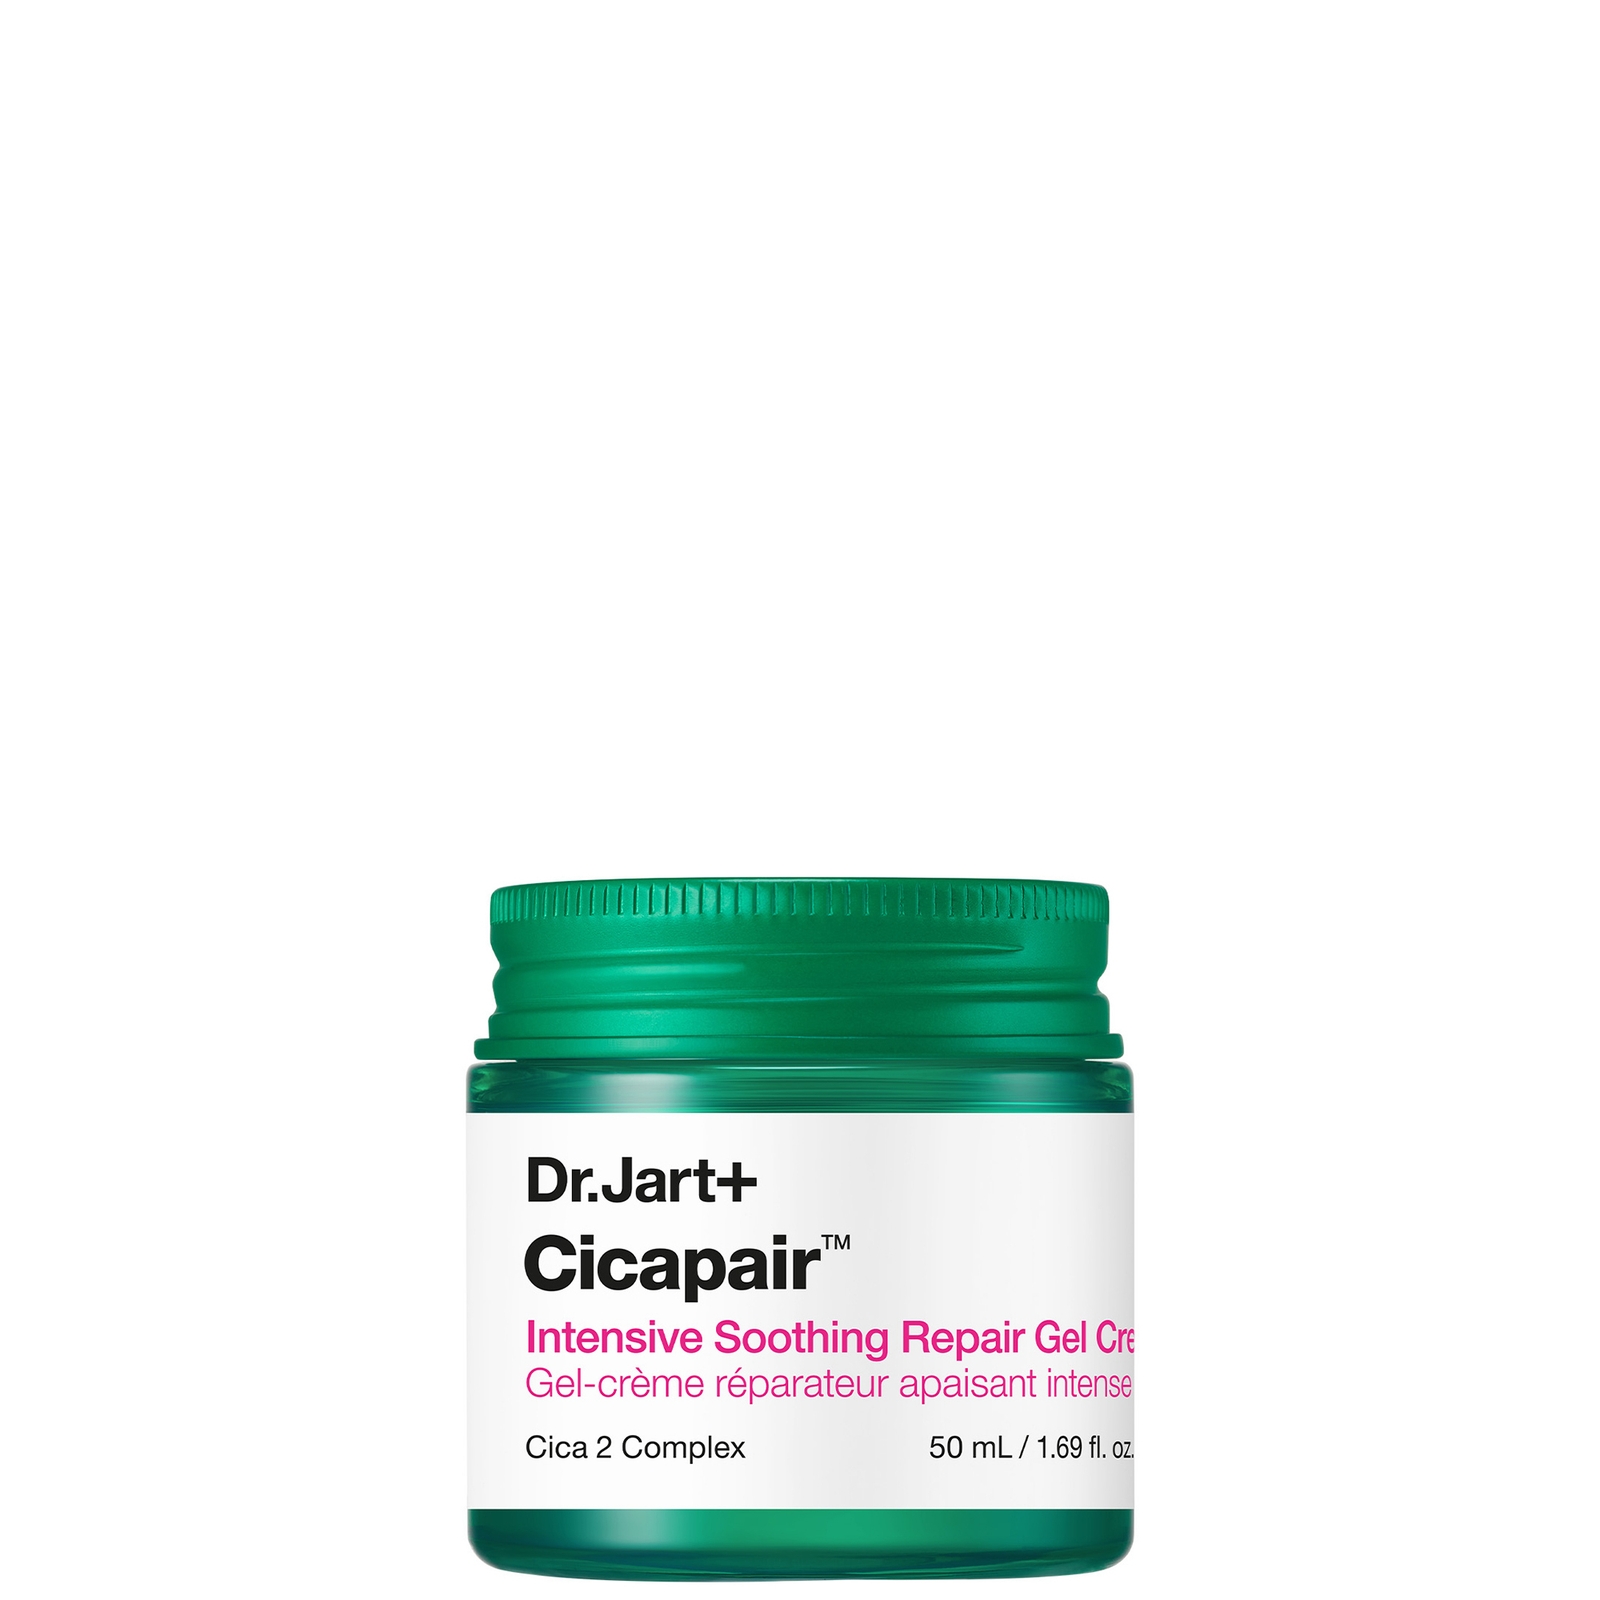 Dr.Jart+ Cicapair Intensive Soothing Repair Gel Cream 50ml